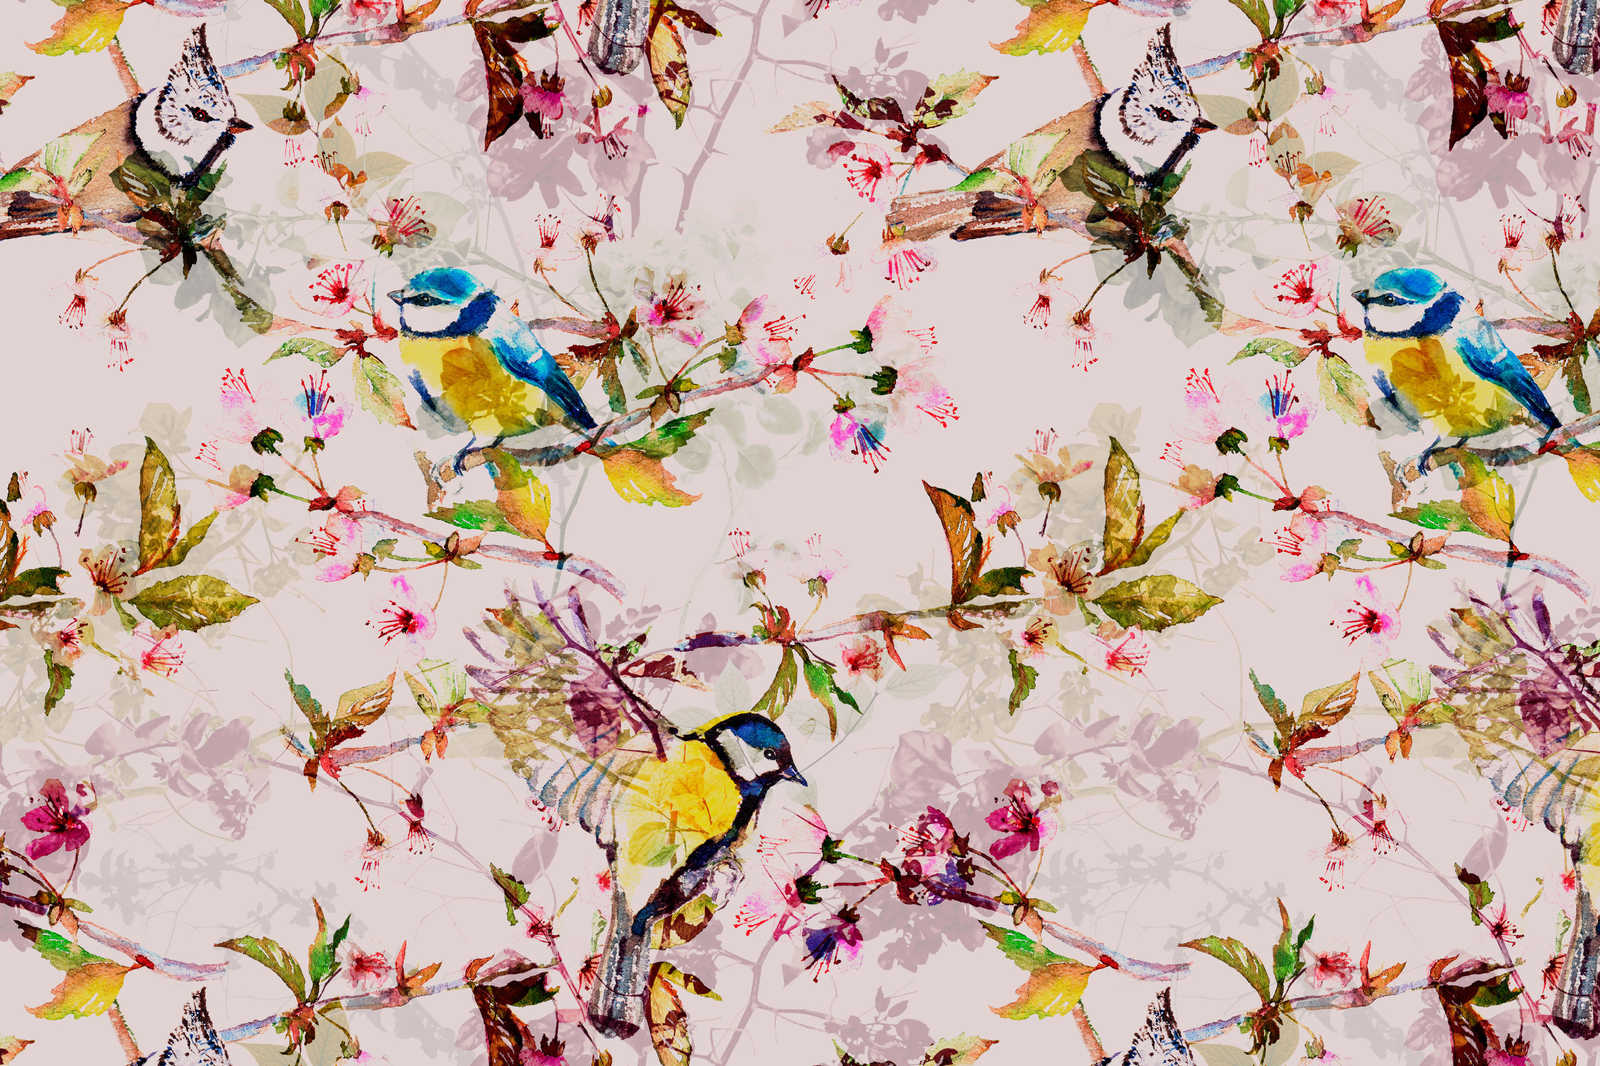             Pintura en lienzo estilo collage de pájaros - 0,90 m x 0,60 m
        